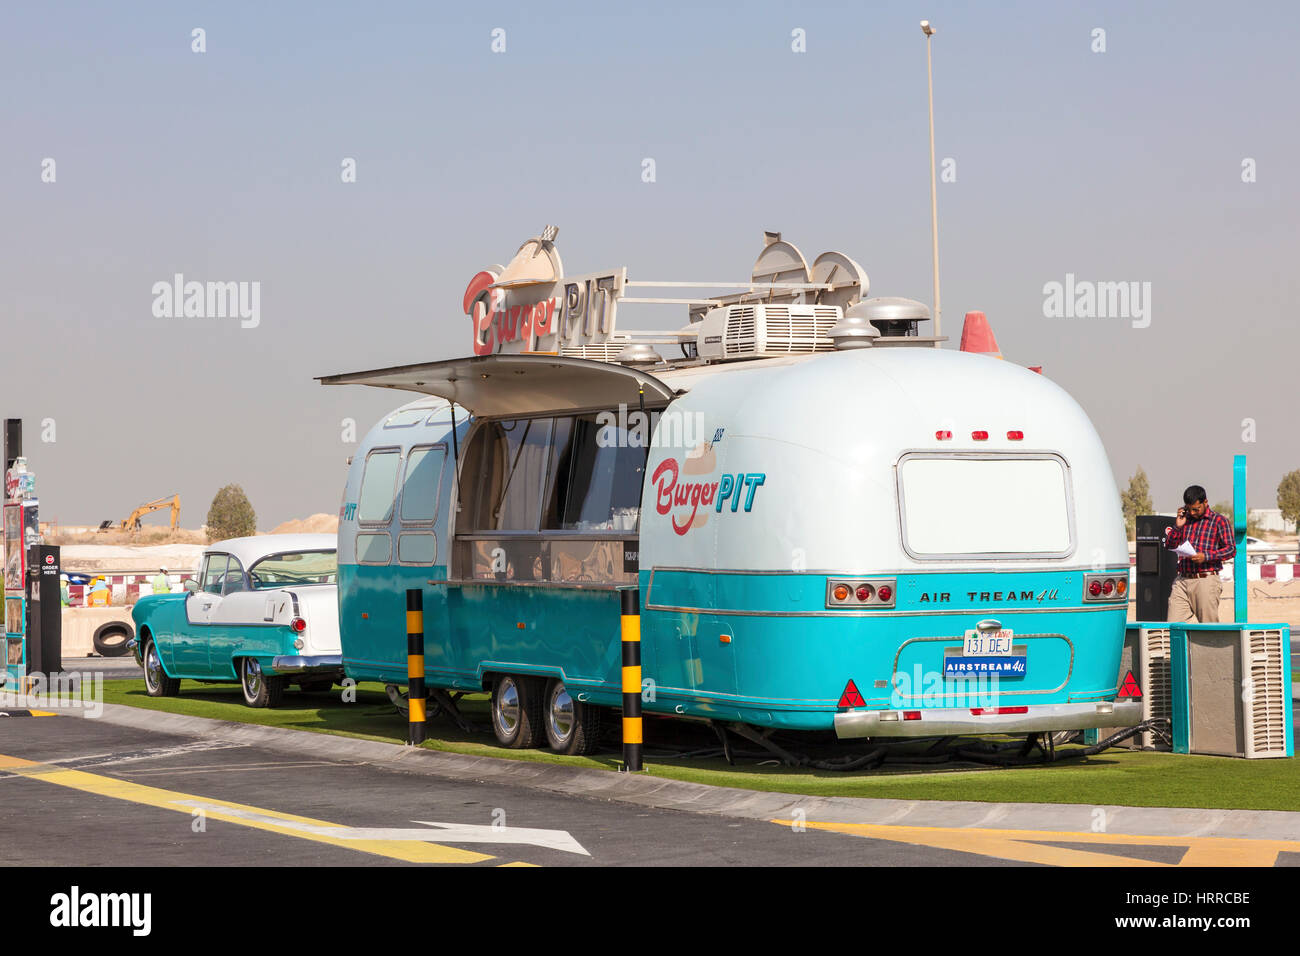 Dubaï, Émirats arabes unis - 27 nov., 2016 : caravane Airstream converti à un camion alimentaire alimentaire à la dernière sortie sur le parc de camions de l'autoroute E11 entre Abu Dhabi et Duba Banque D'Images